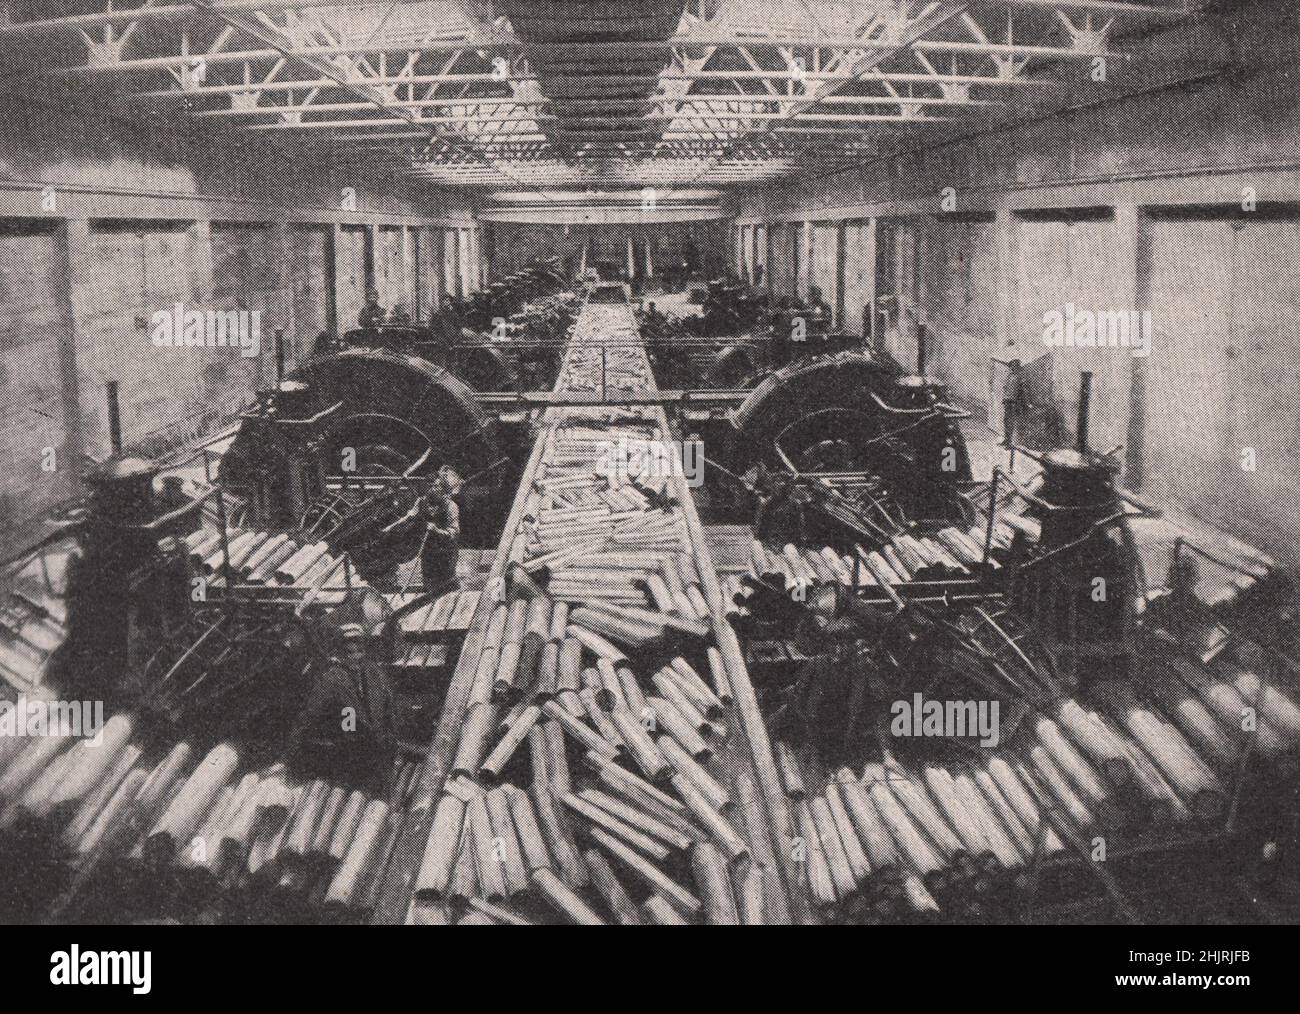 Pulpa de madera en la fabricación en las fábricas de Grand Falls. Canadá. Newfoundland (1923) Foto de stock